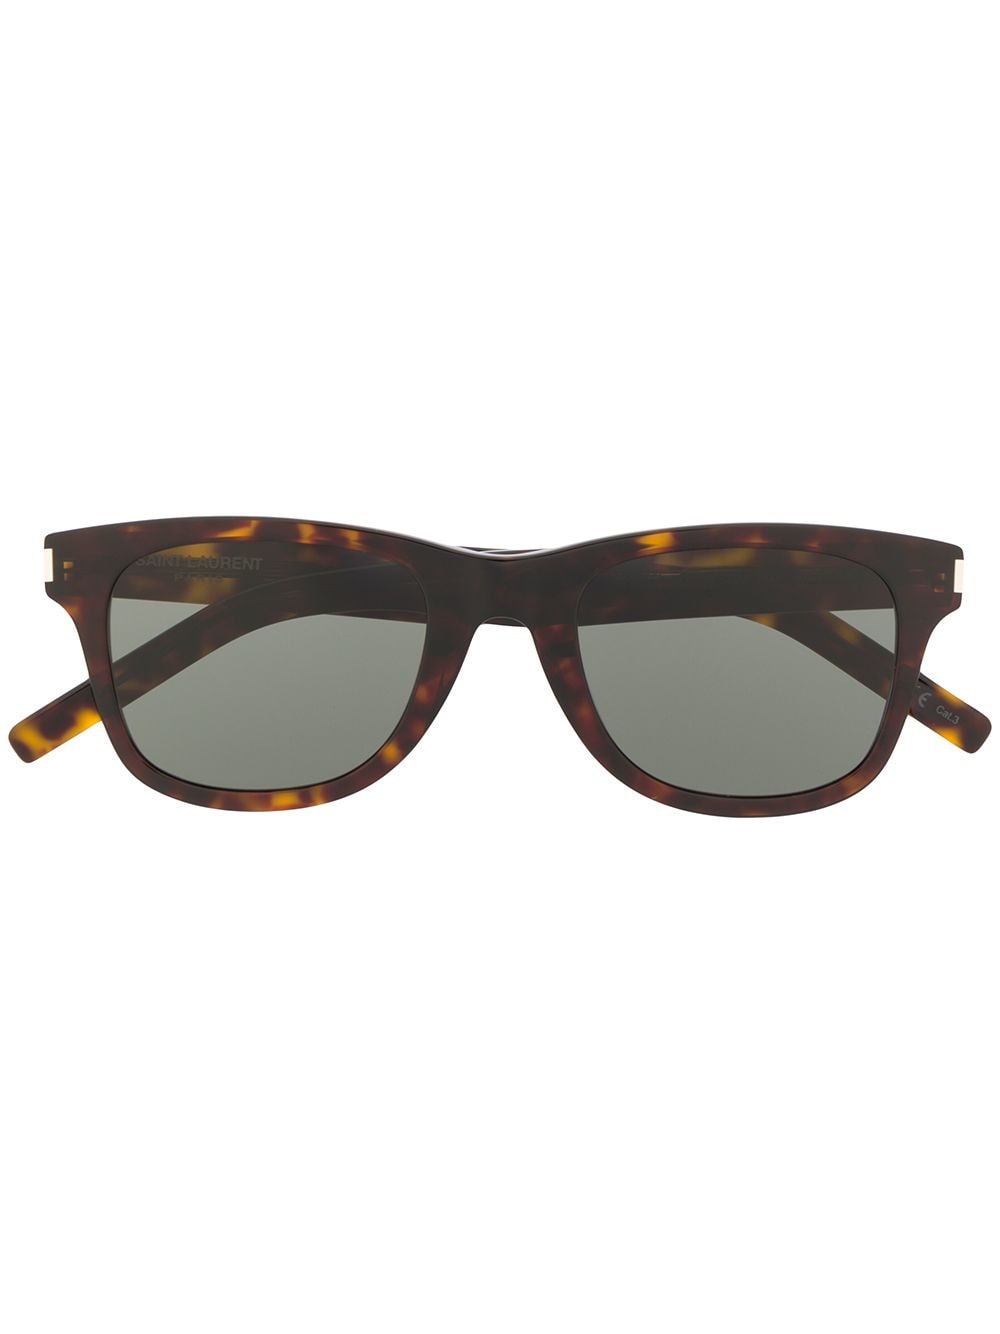 фото Saint laurent eyewear солнцезащитные очки sl51bslim в прямоугольной оправе